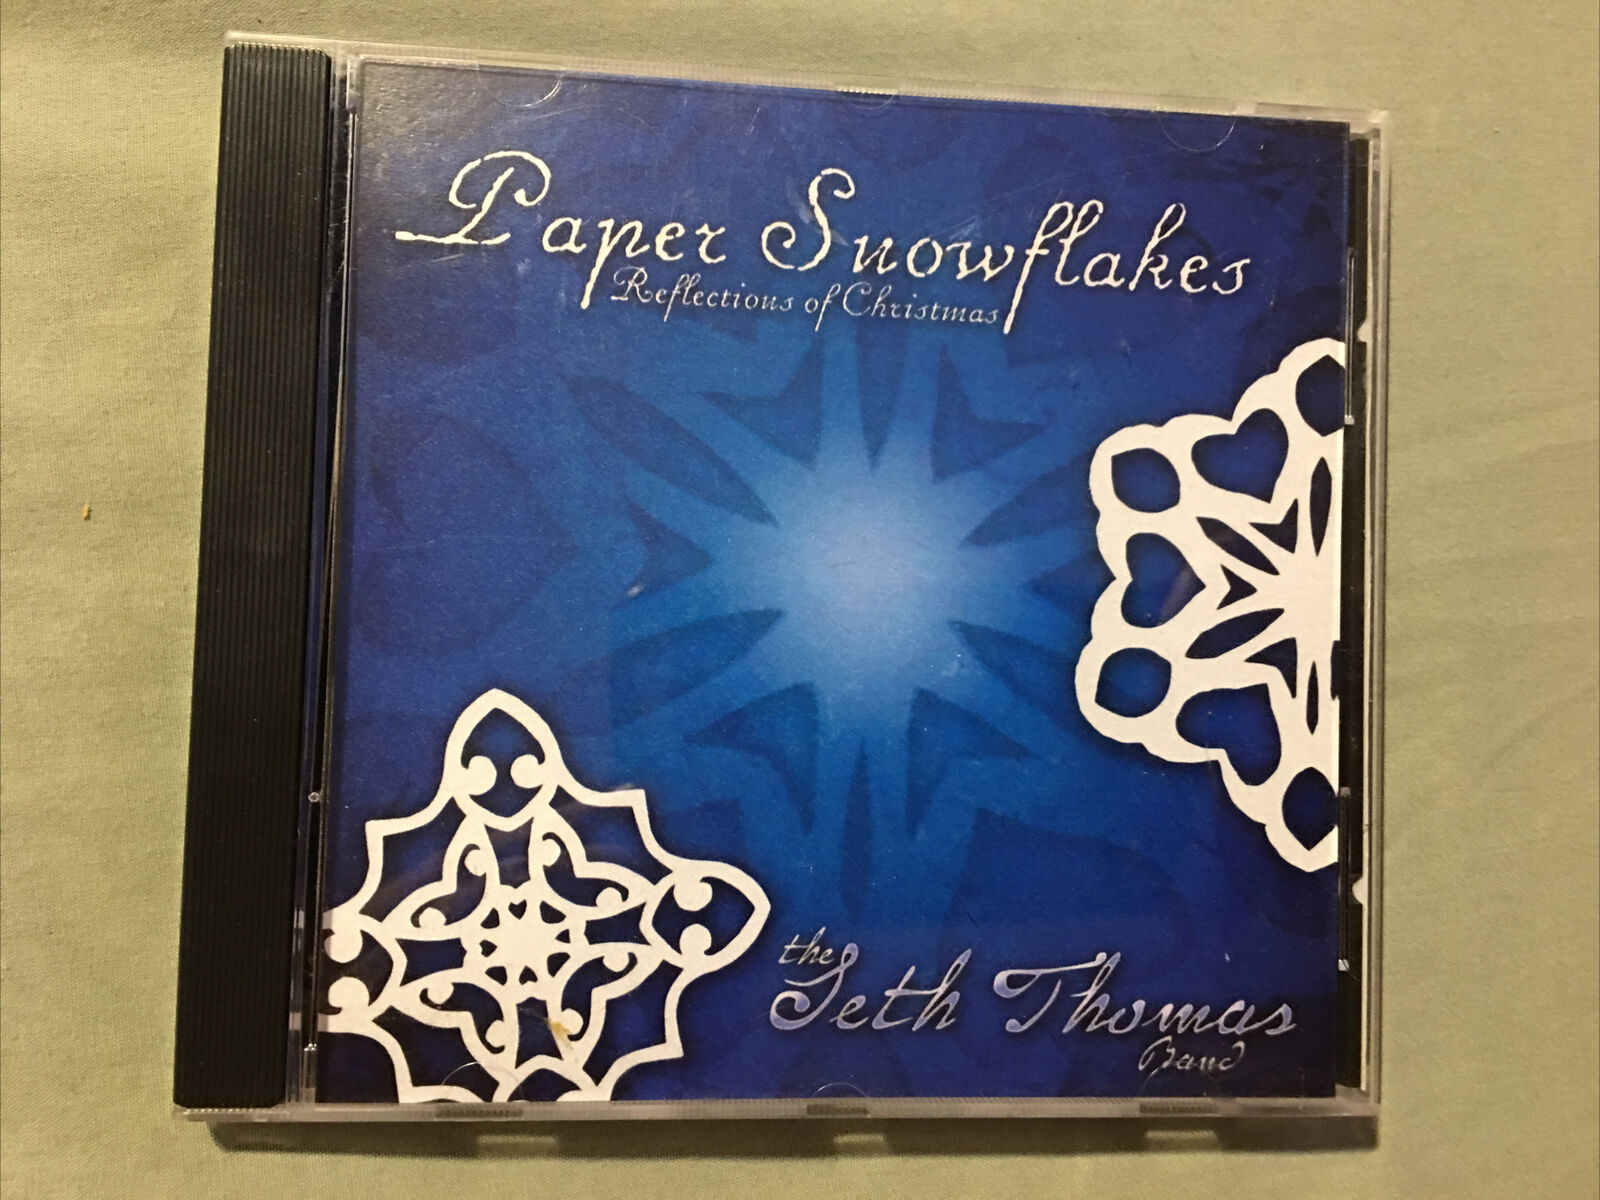 Paper Snowflakes CD - The Seth Thomas Band - Ships Fast Same Day